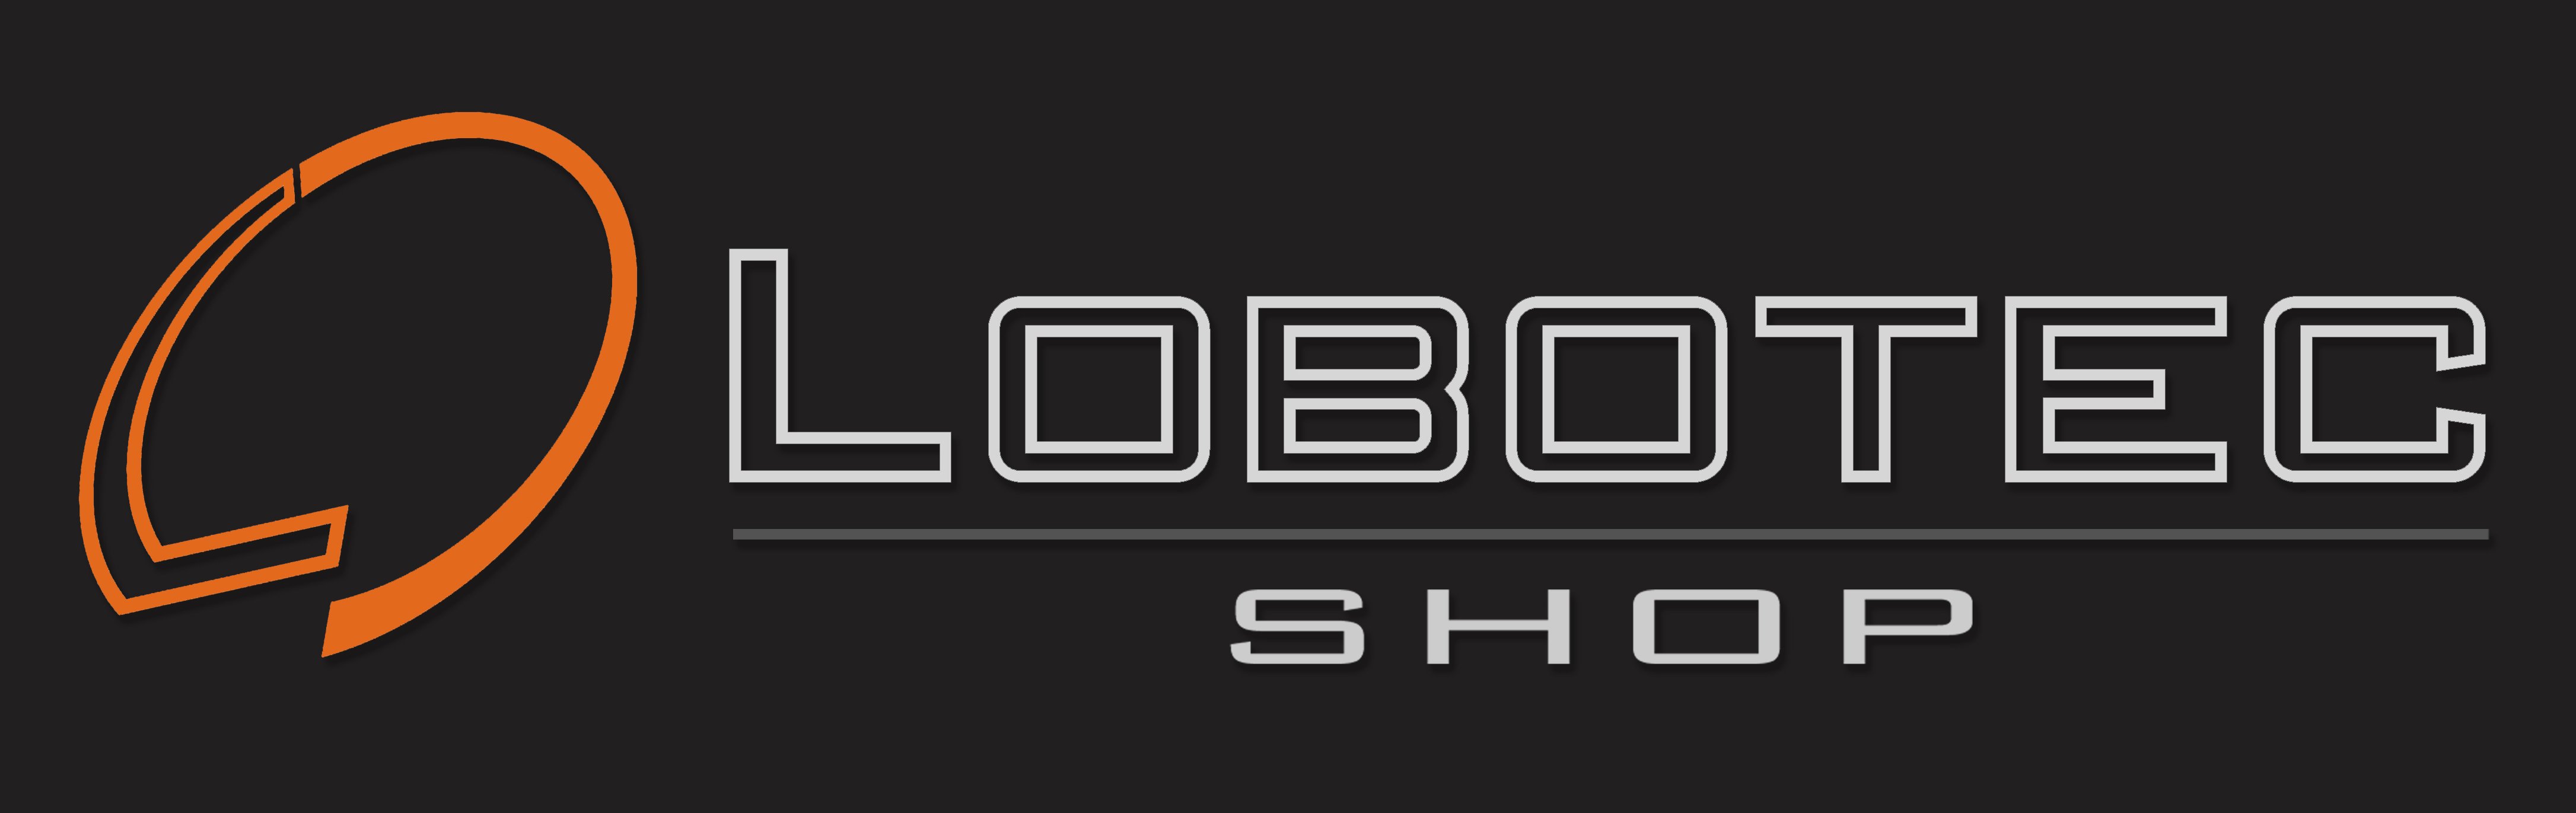 LOBOTEC - Shop